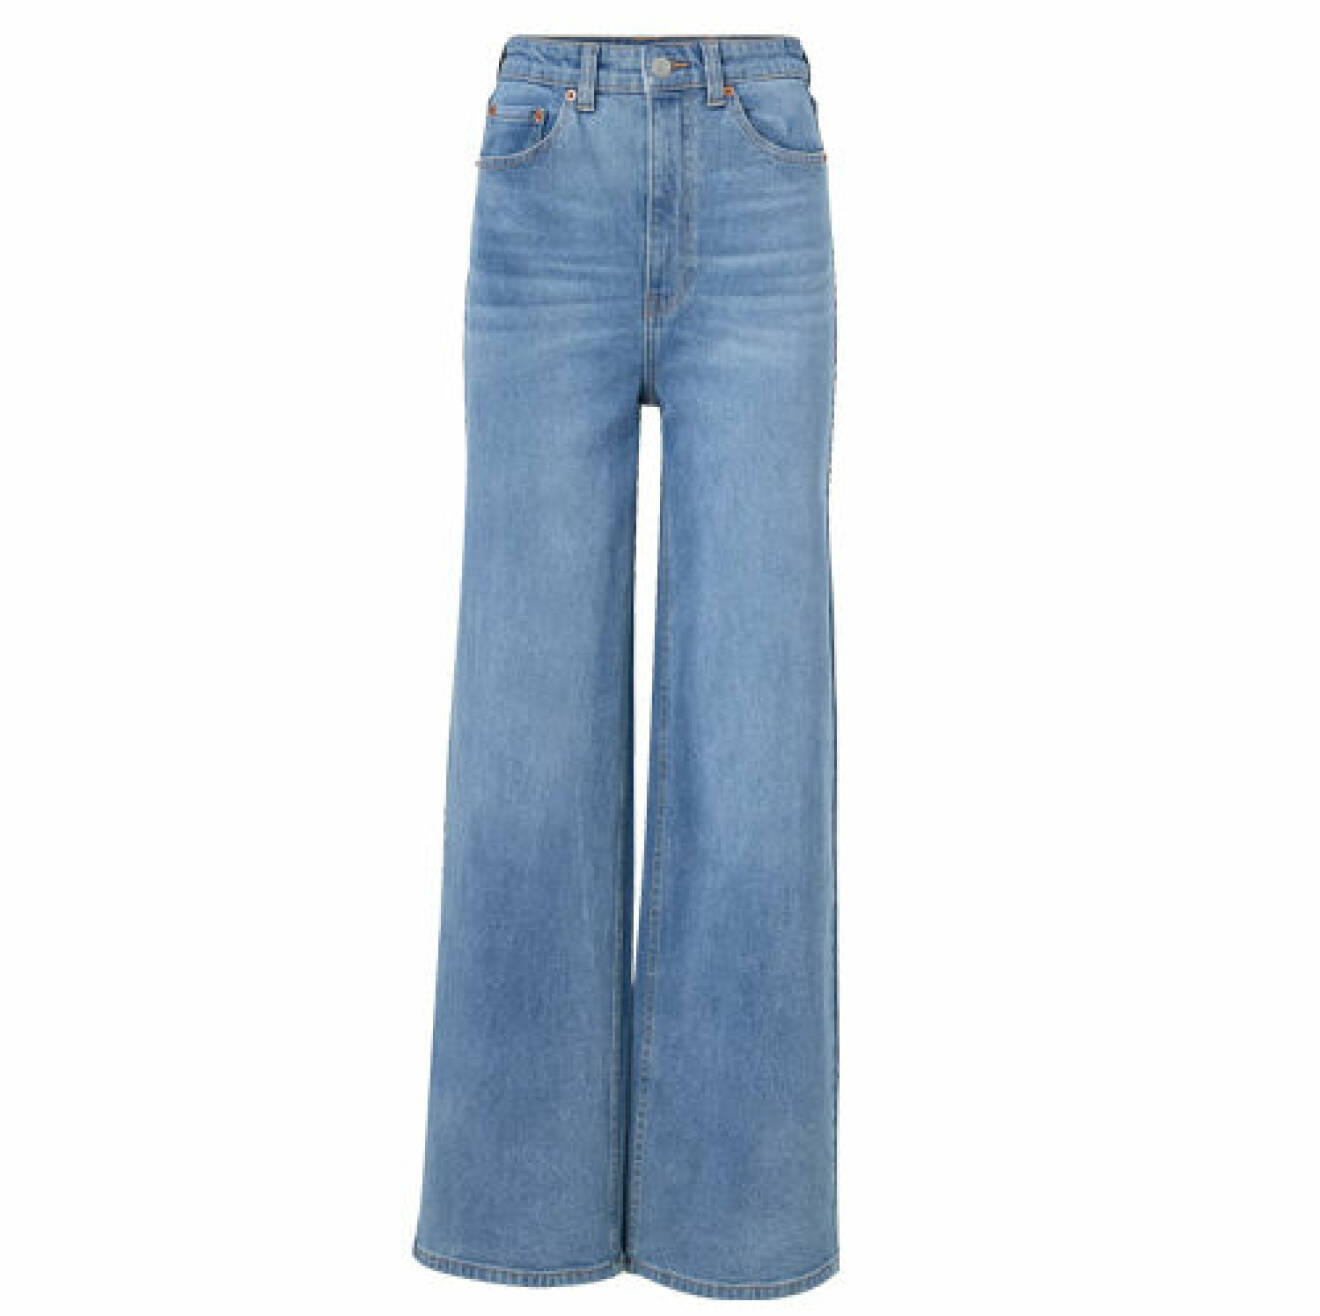 Vida jeans i en klassisk blå nyans från Ellos